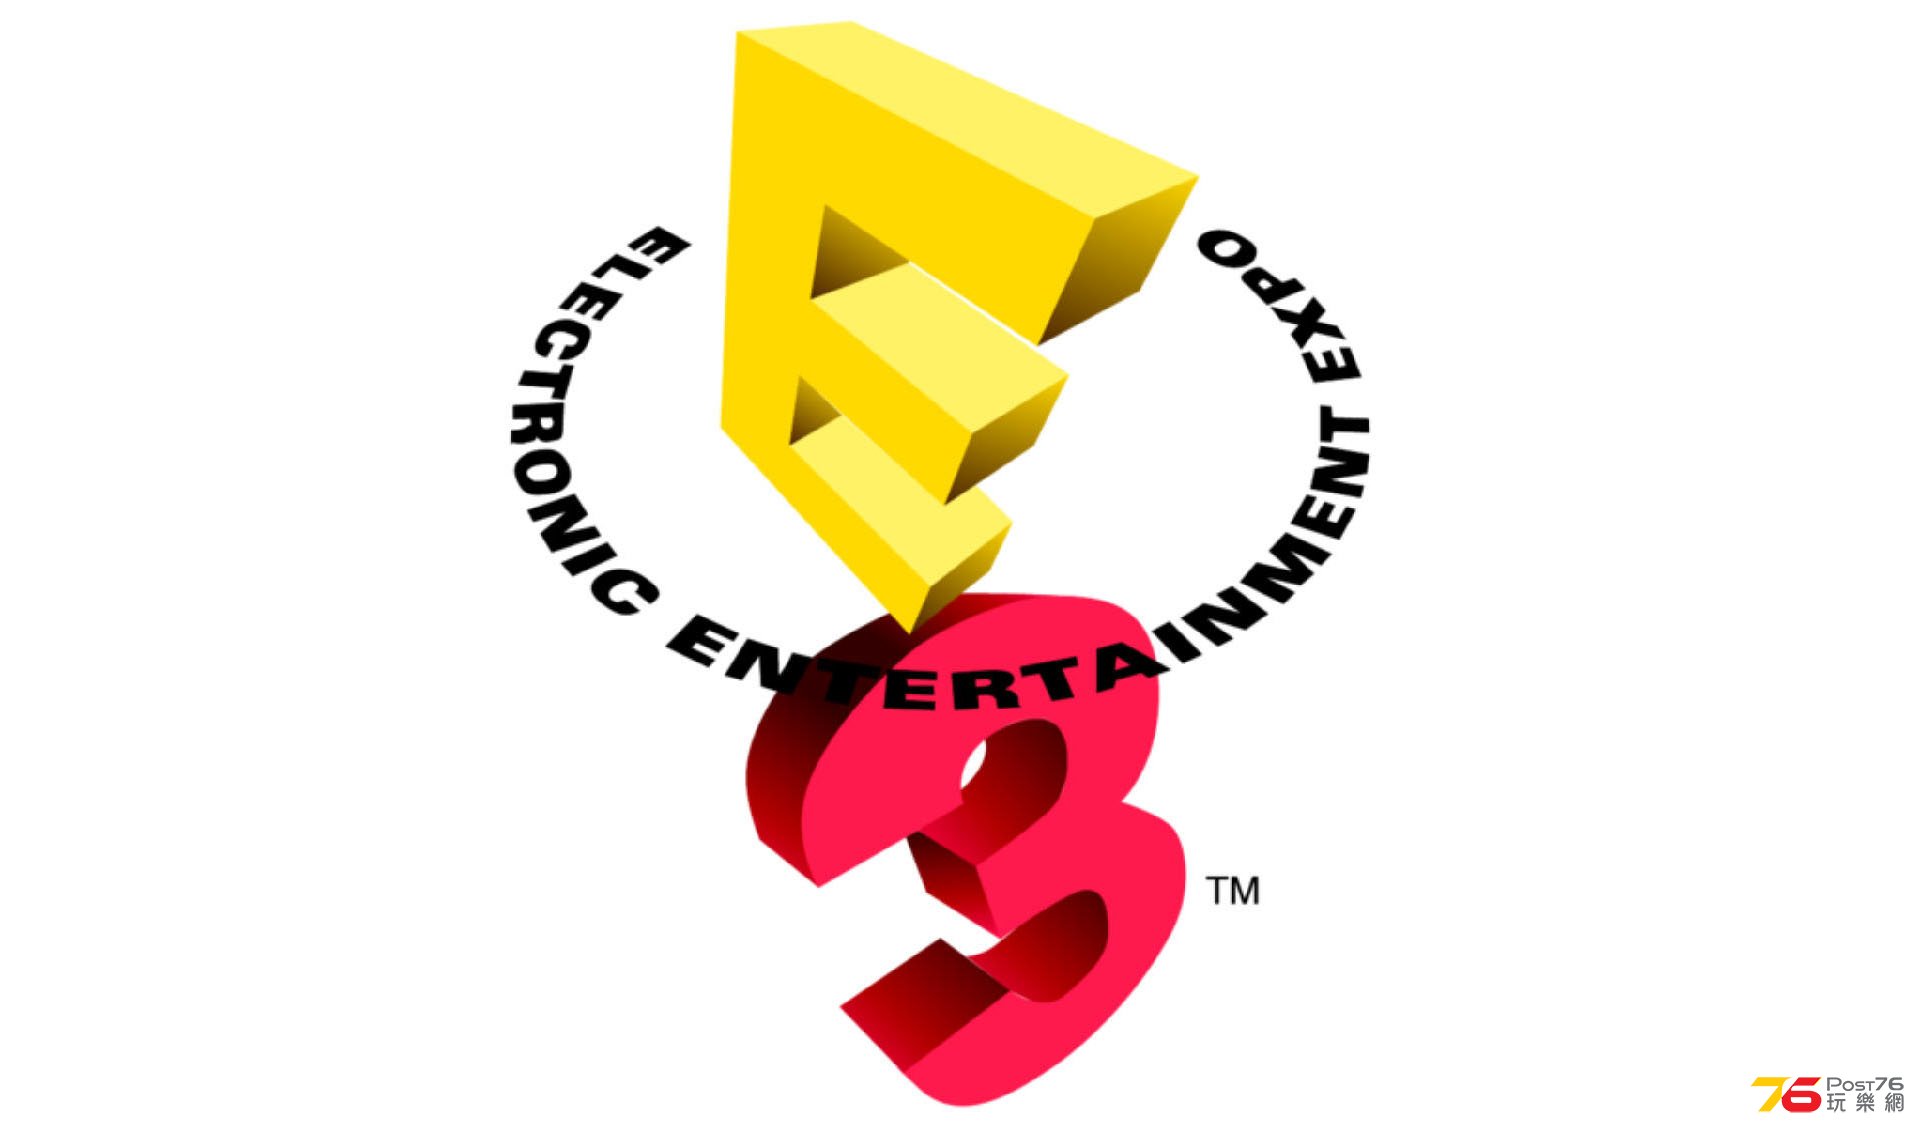 e3_logo.jpg